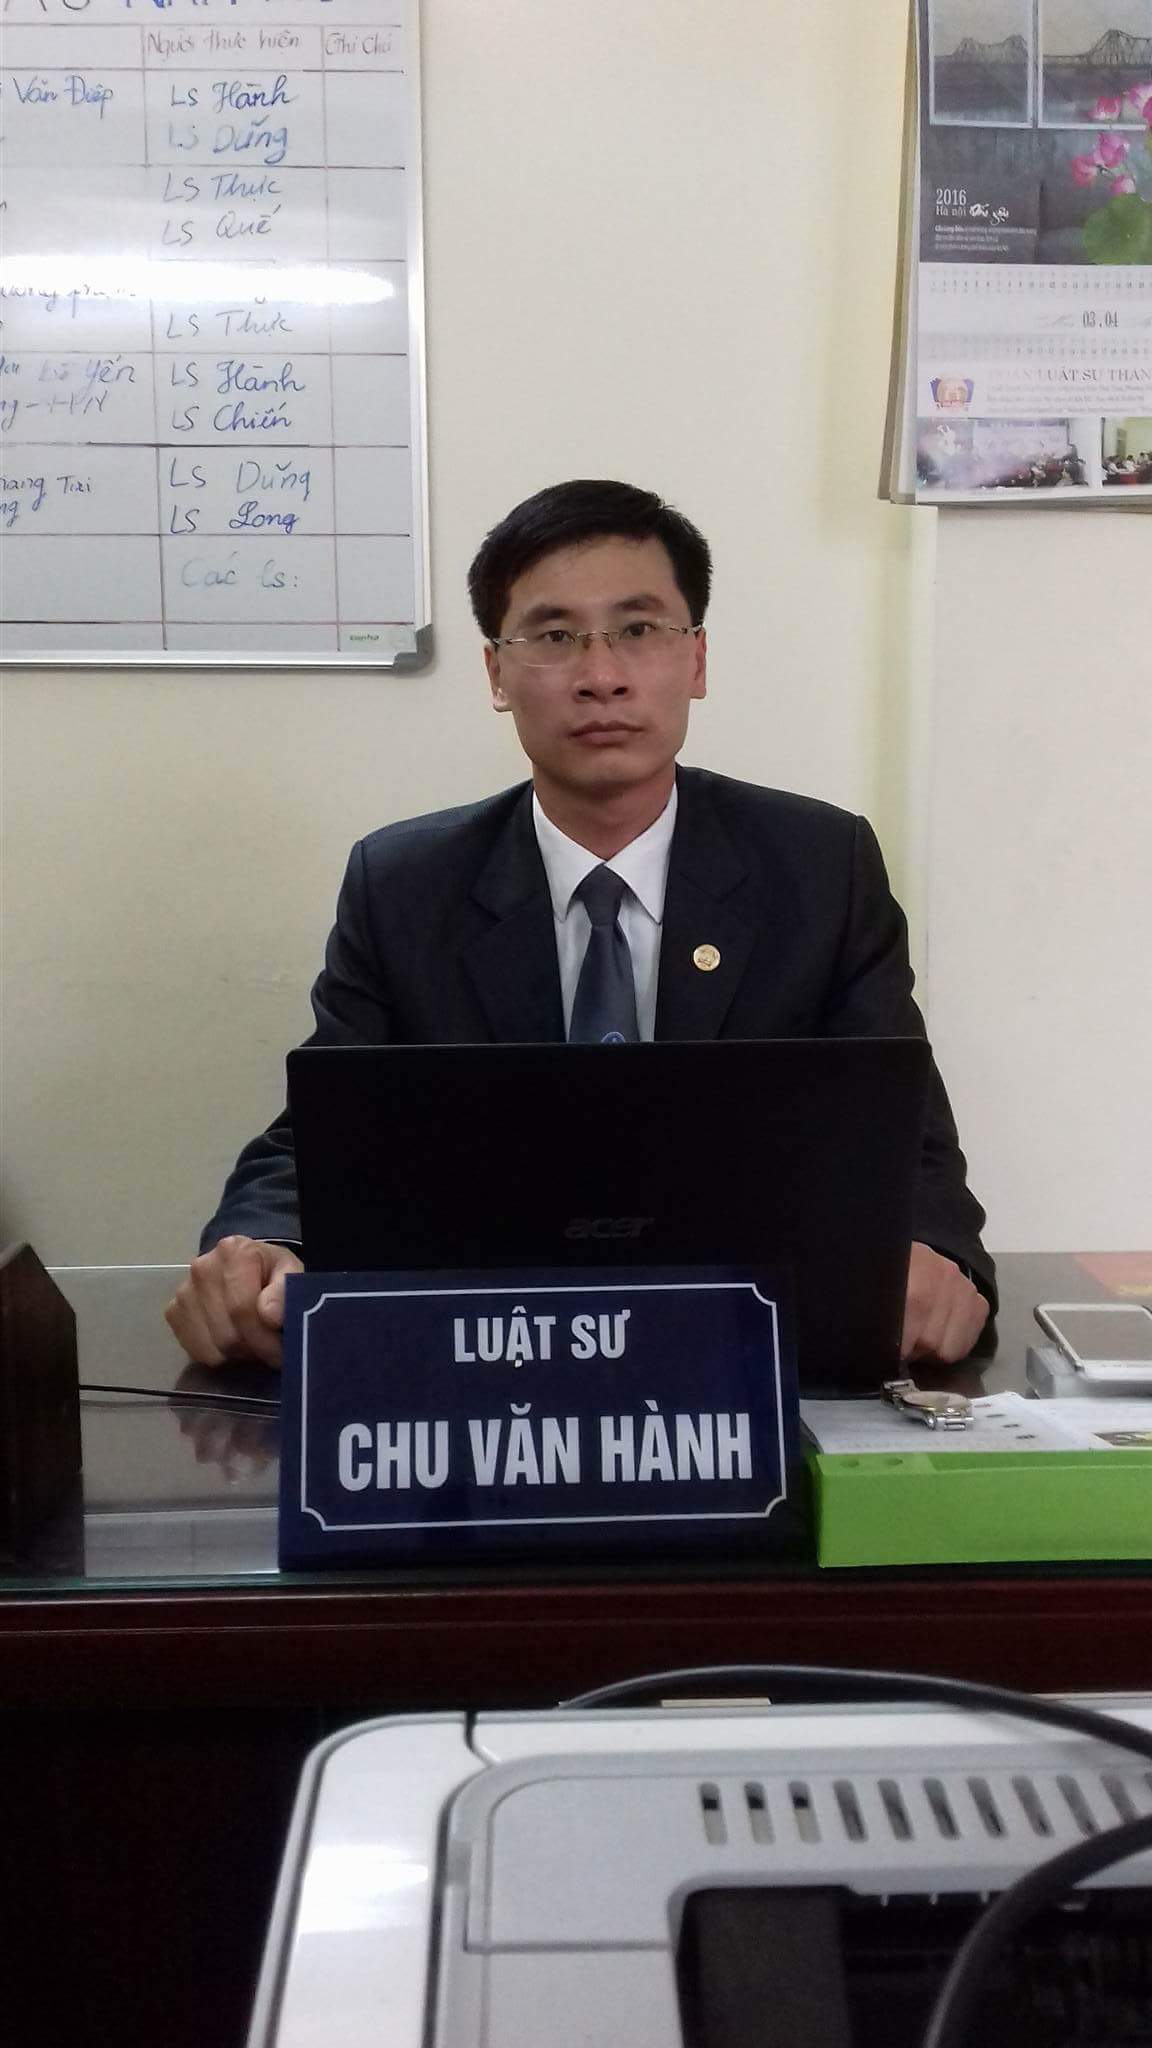 Chu Văn Hành